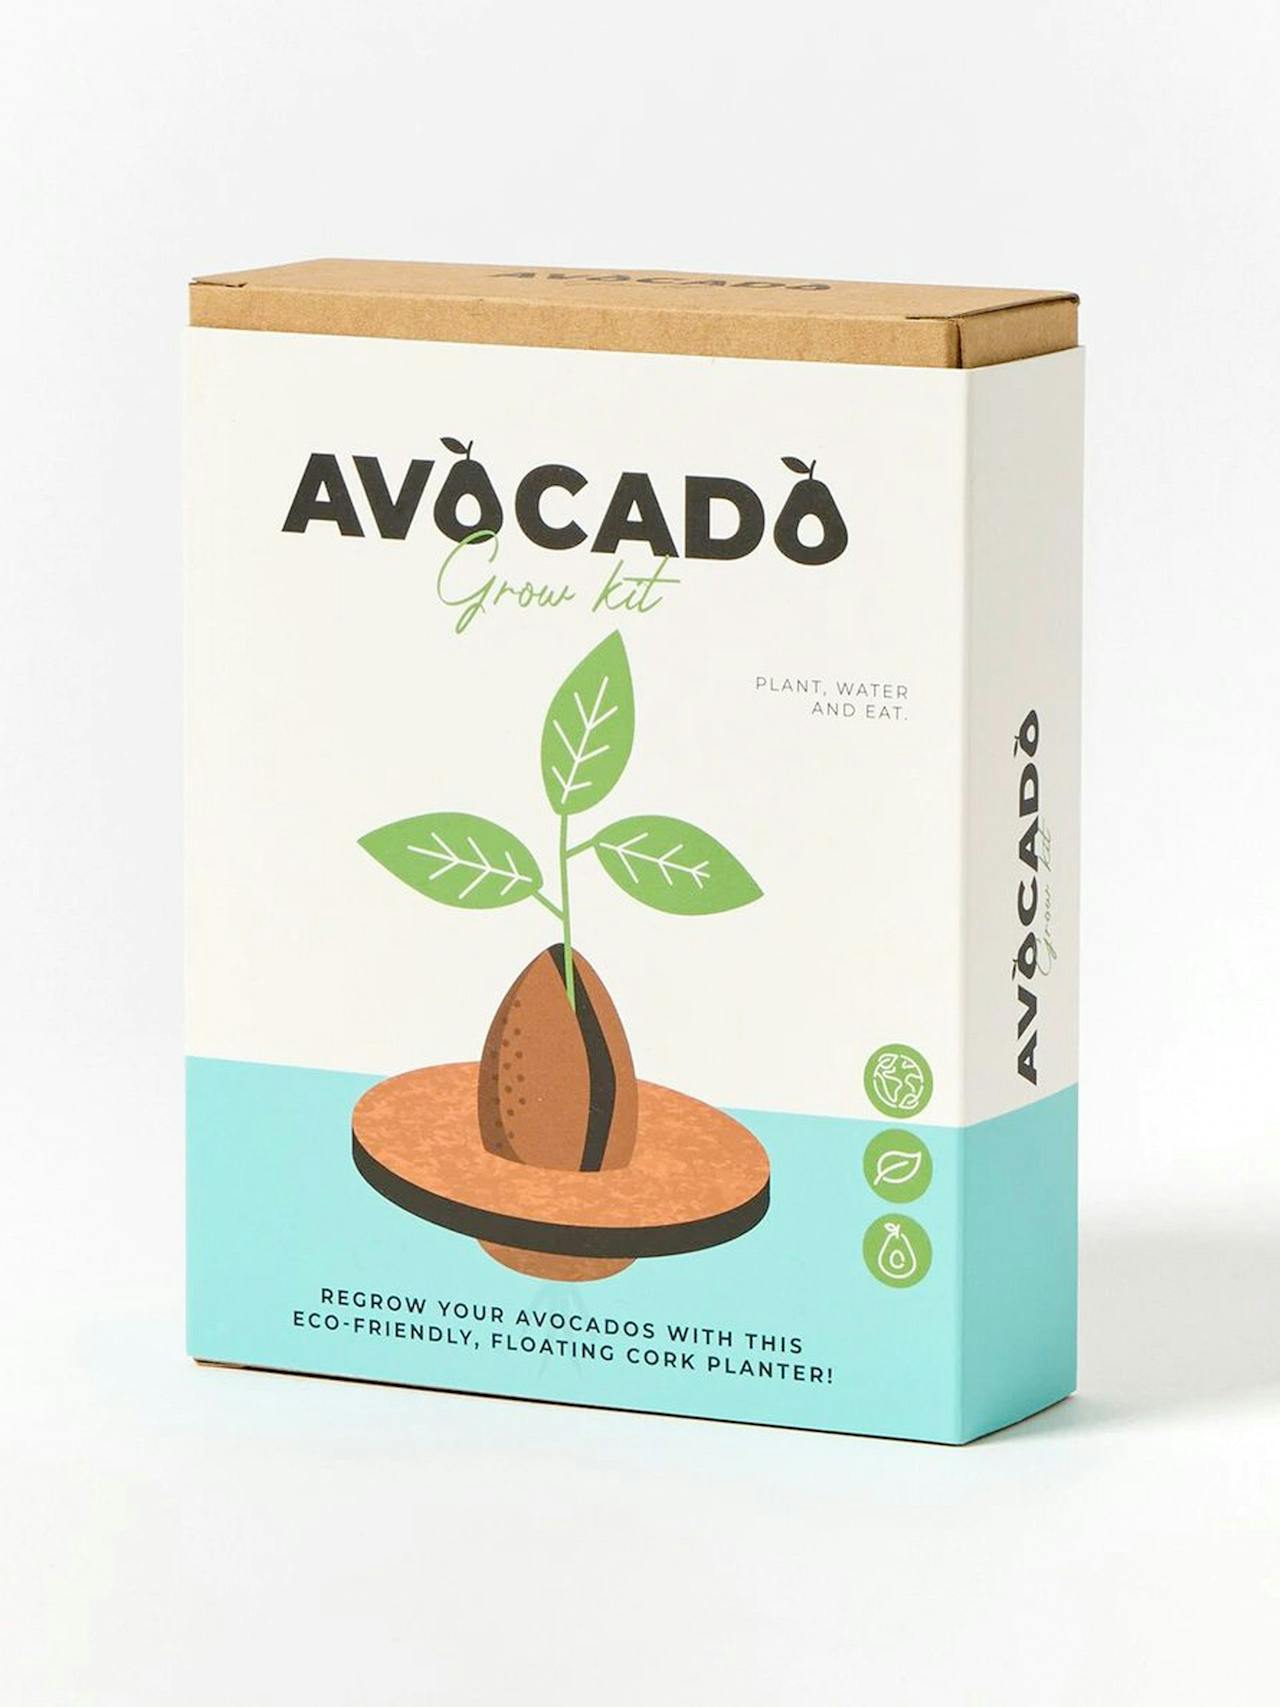 Avocado grow kit